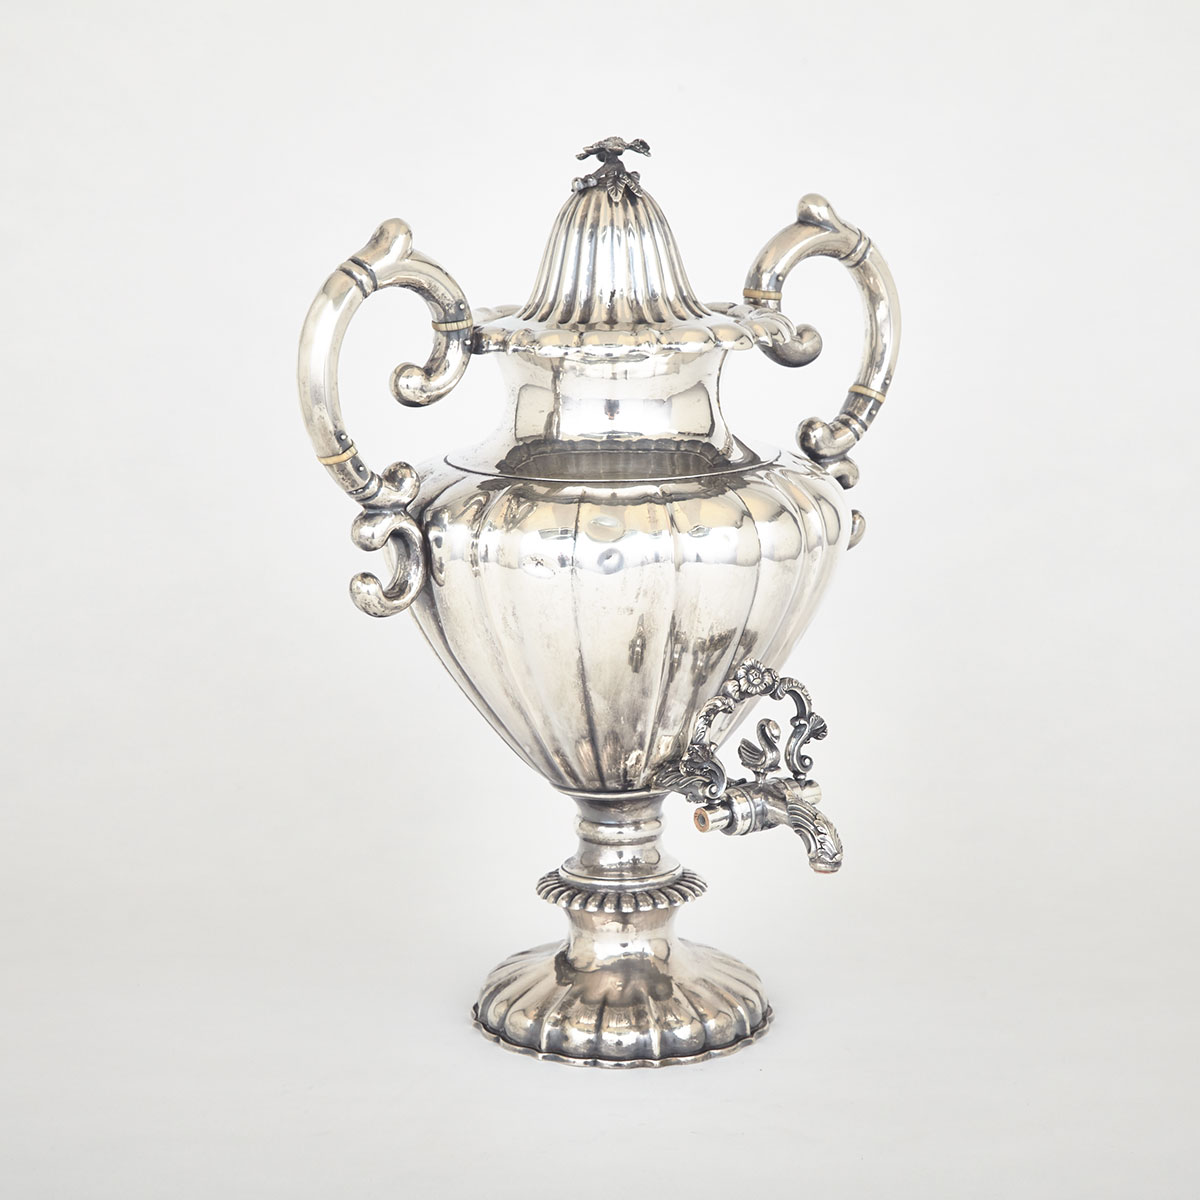 American Silver Tea Urn, Gerardus Boyce, New York, N.Y., c.1825